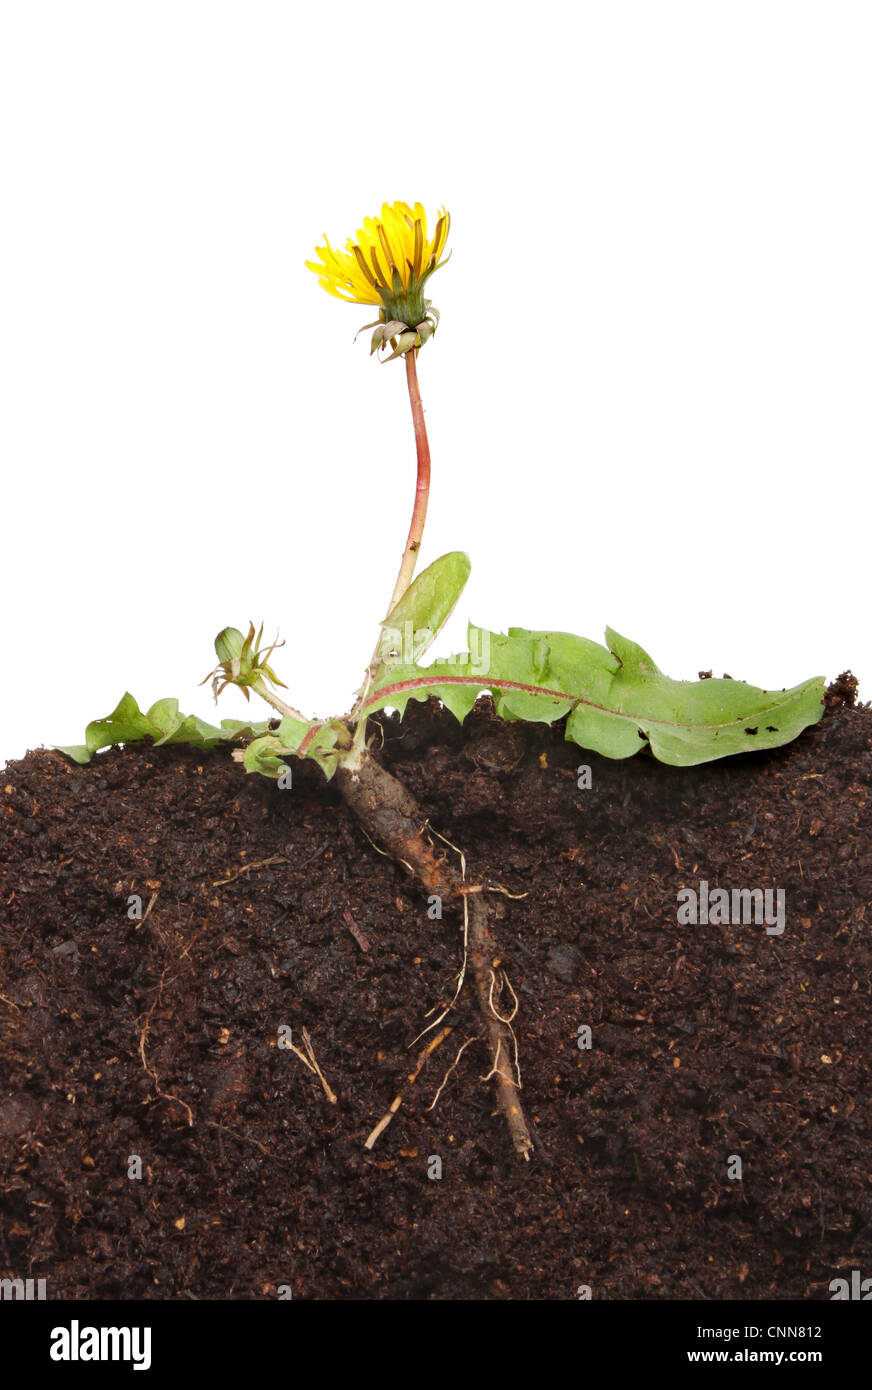 Le pissenlit, Taraxacum officinale, plante un article montrant la structure des racines et des bourgeons de fleurs,feuilles dans le sol sur un fond blanc. Banque D'Images